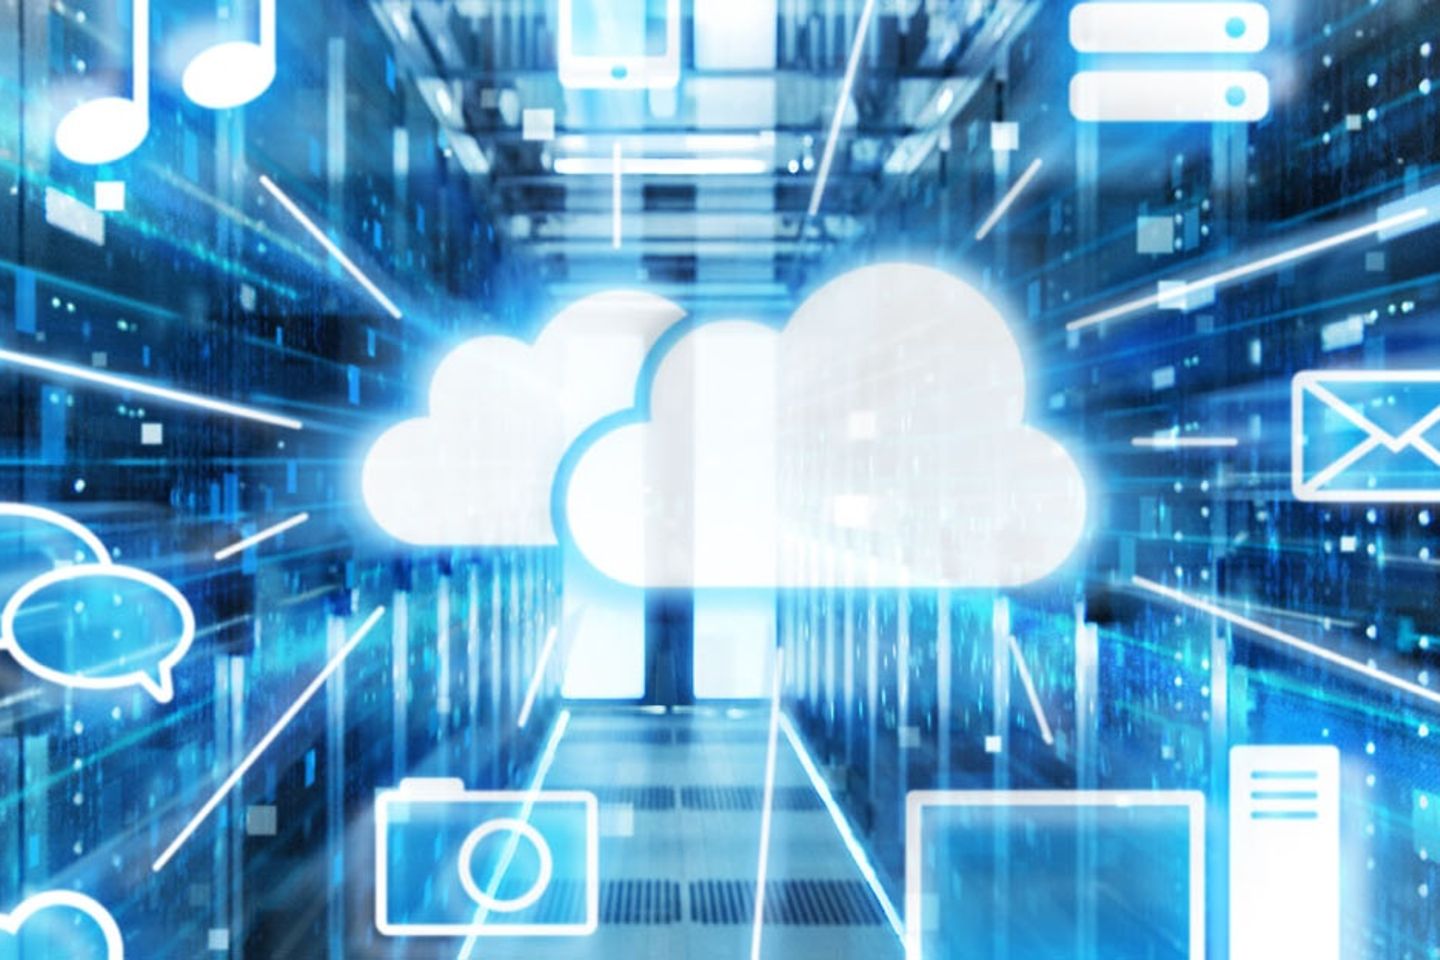 Vista de um corredor com servidores em rack, com ícones de nuvem virtual em primeiro plano.